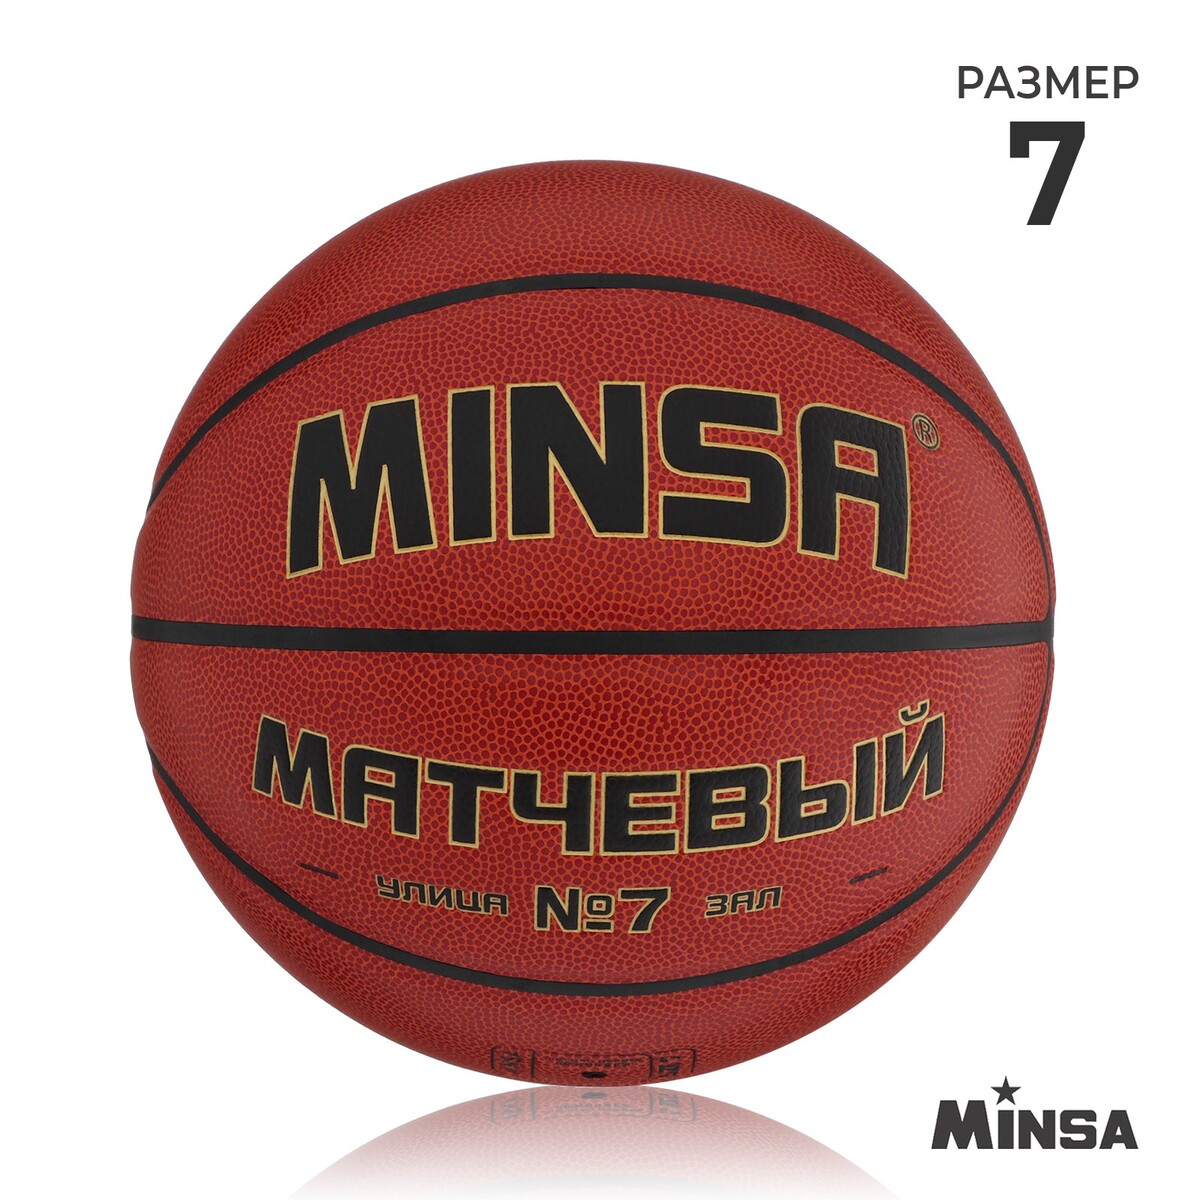 Баскетбольный мяч minsa, матчевый, microfiber pu, клееный, 8 панелей, р. 7 мяч баскетбольный minsa sport пвх клееный 8 панелей р 5